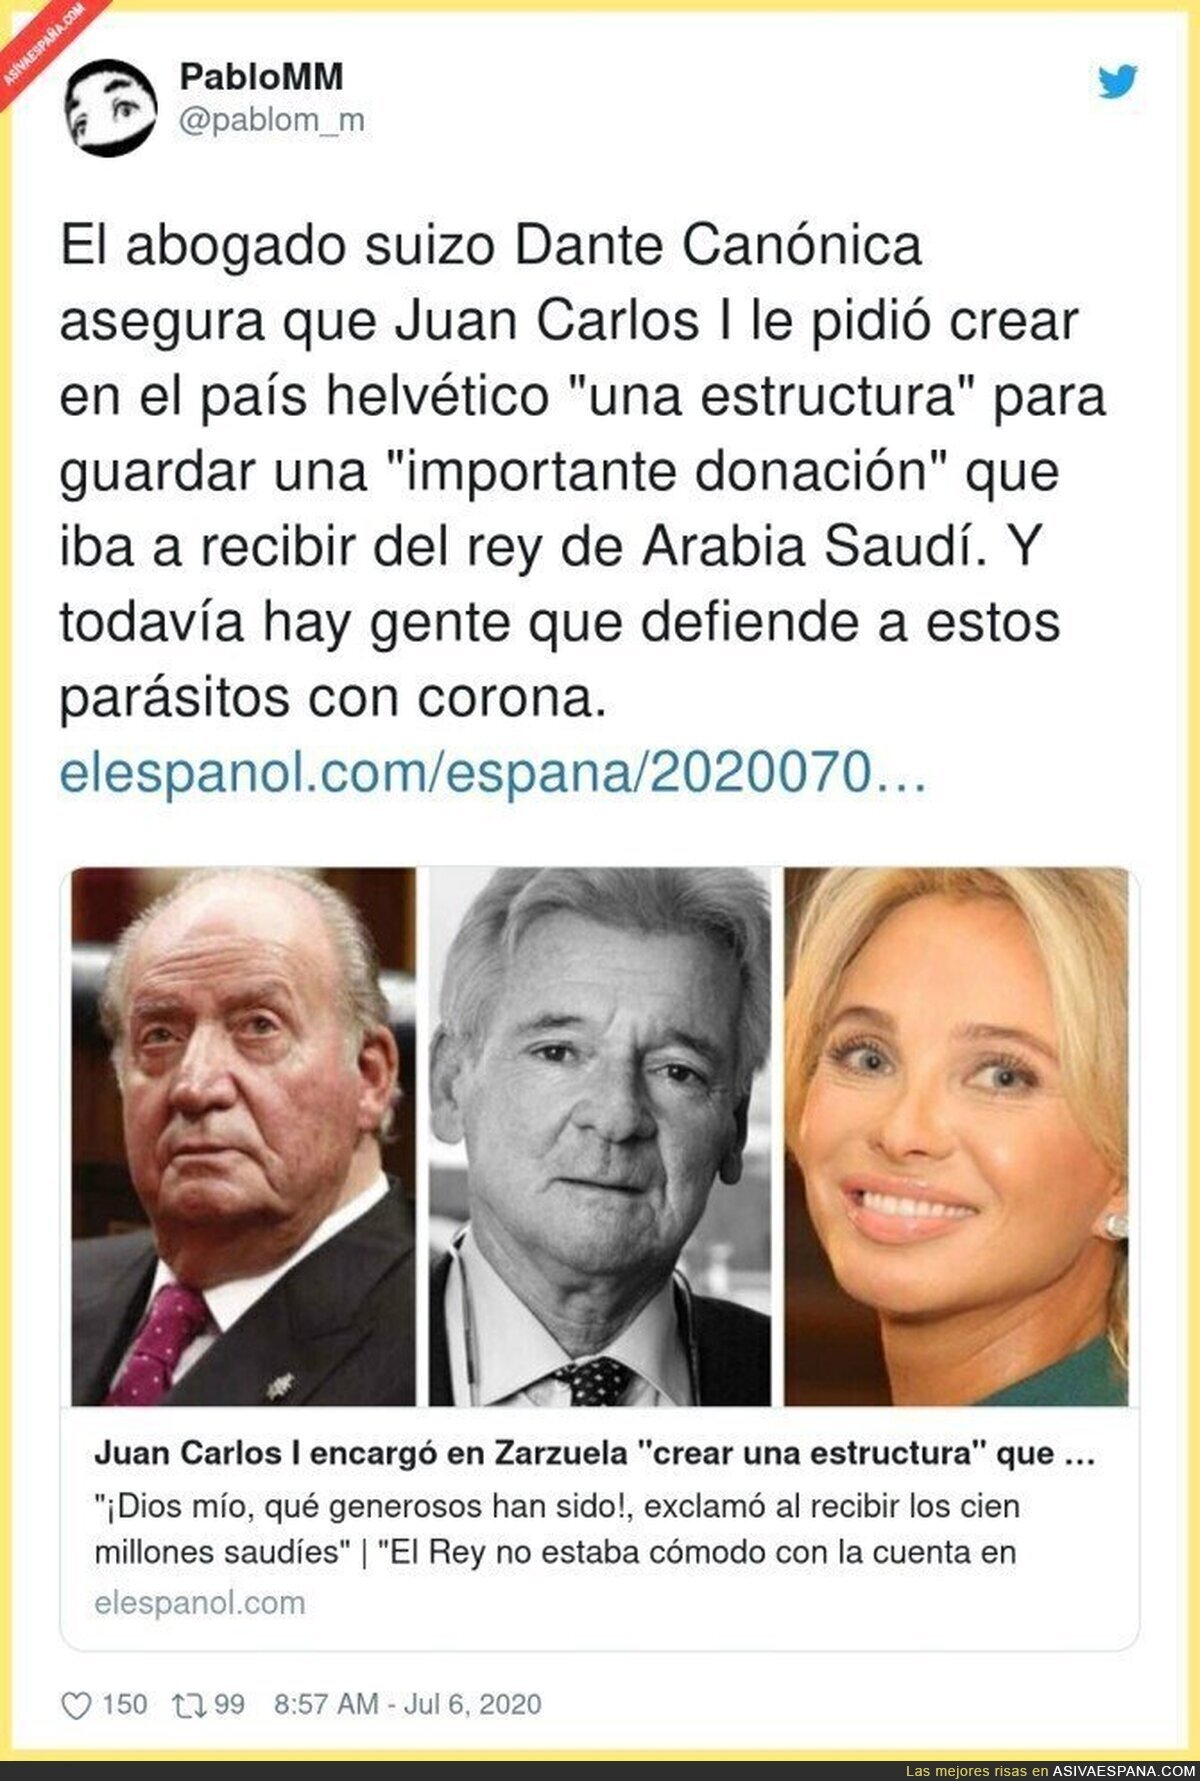 Menudo campechano el Rey Juan Carlos I